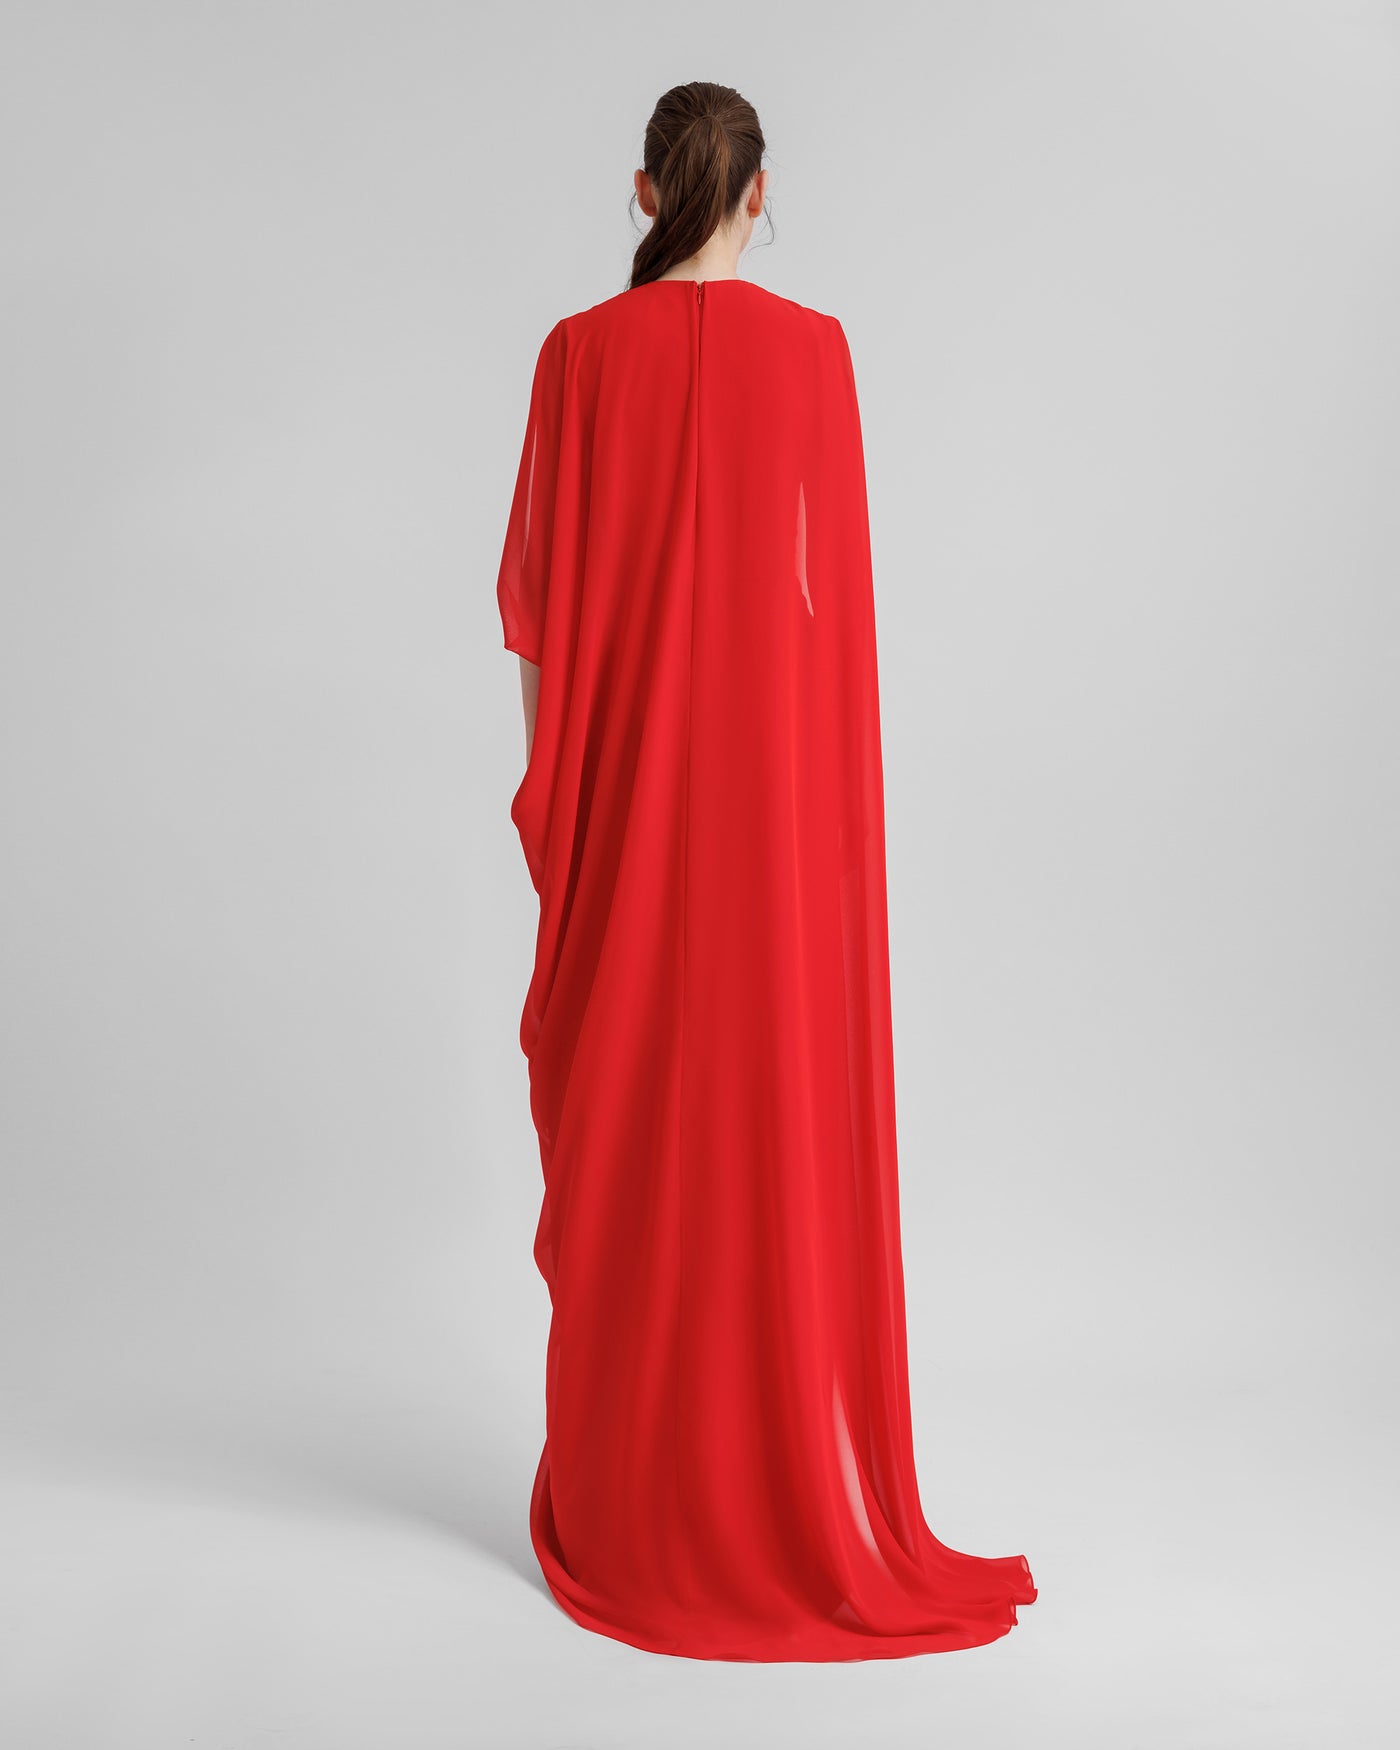 Asymmetrical V-Neckline Dress